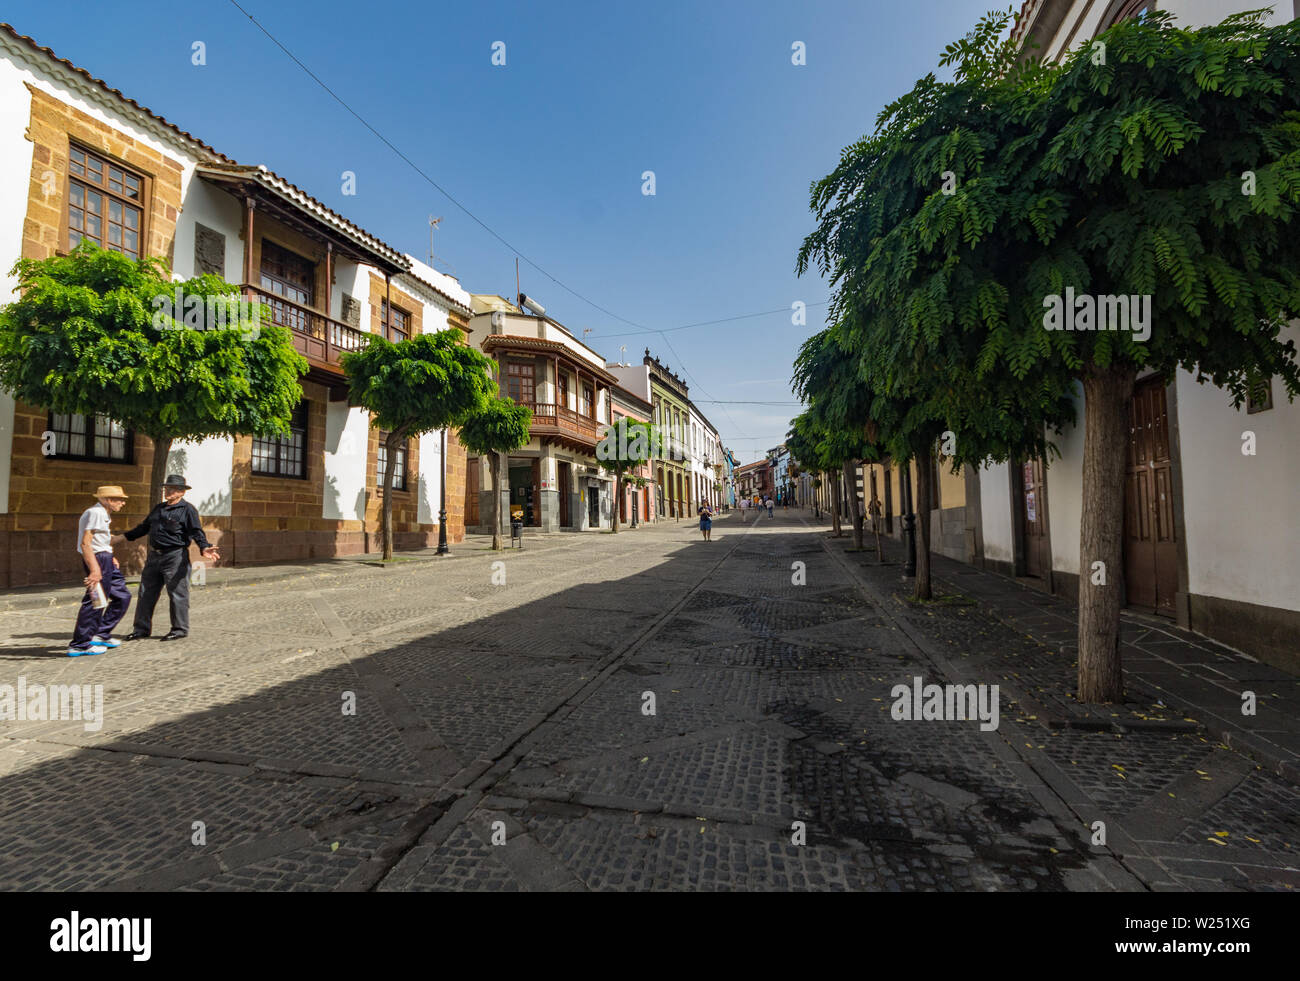 TEROR, Gran Canaria, Espagne - 21 septembre 2015 : Avis de très confortables, dans le centre historique. Maisons anciennes, de temps menaçant , les touristes et les habitants Banque D'Images